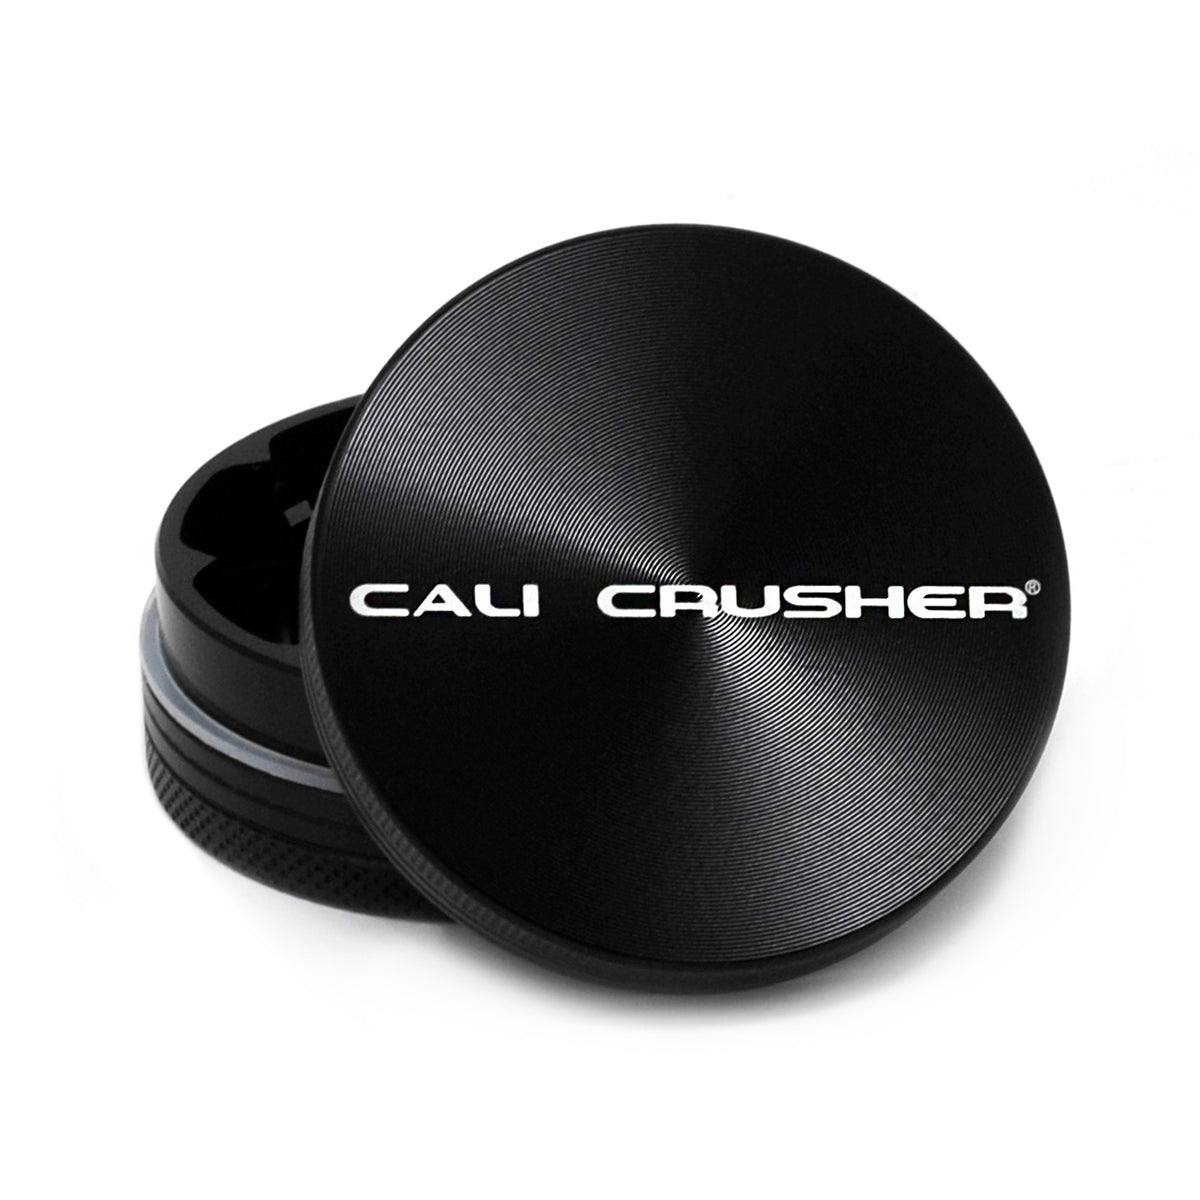 http://calicrusher.com/cdn/shop/products/CC-2-B_topoff_1200x1200.jpg?v=1681490185